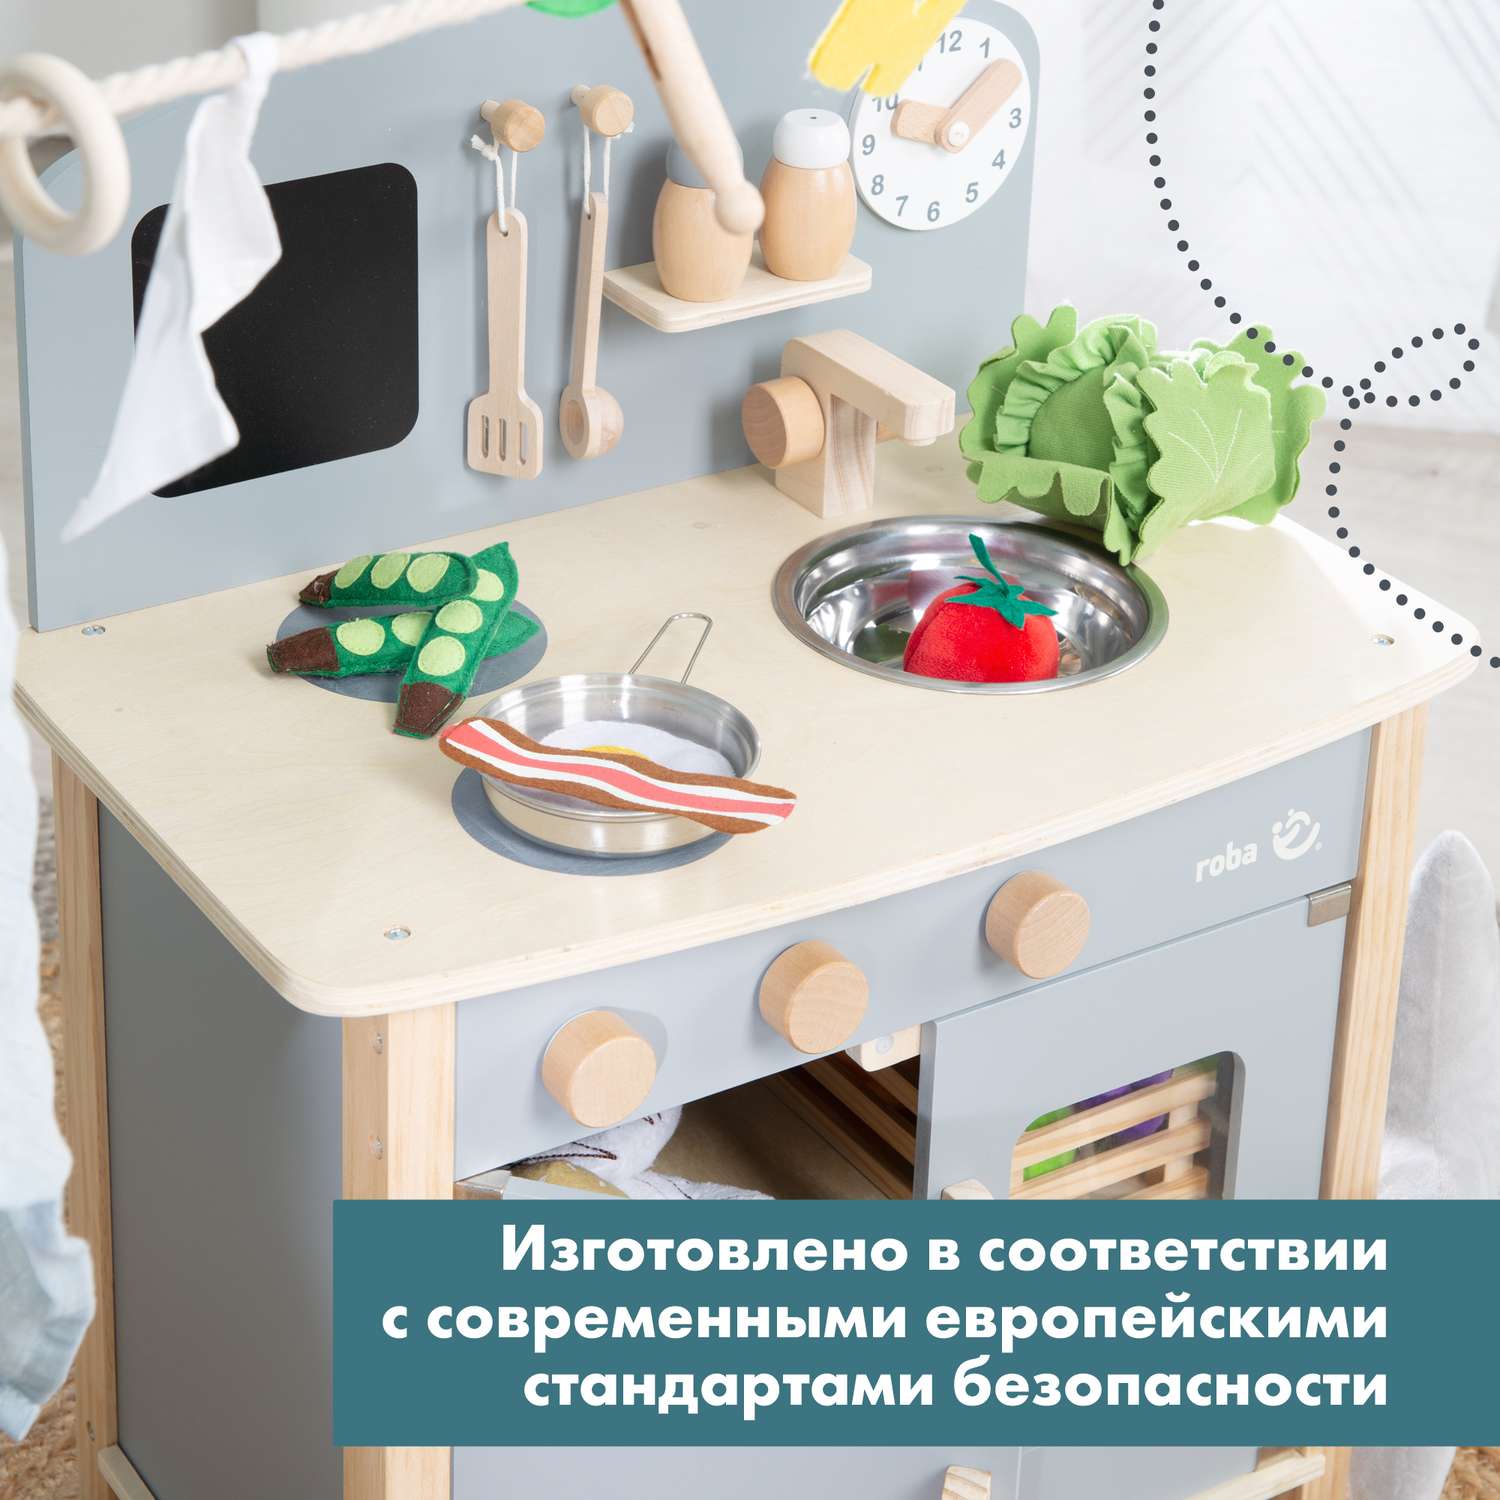 Мини кухня Roba детская игровая - фото 12